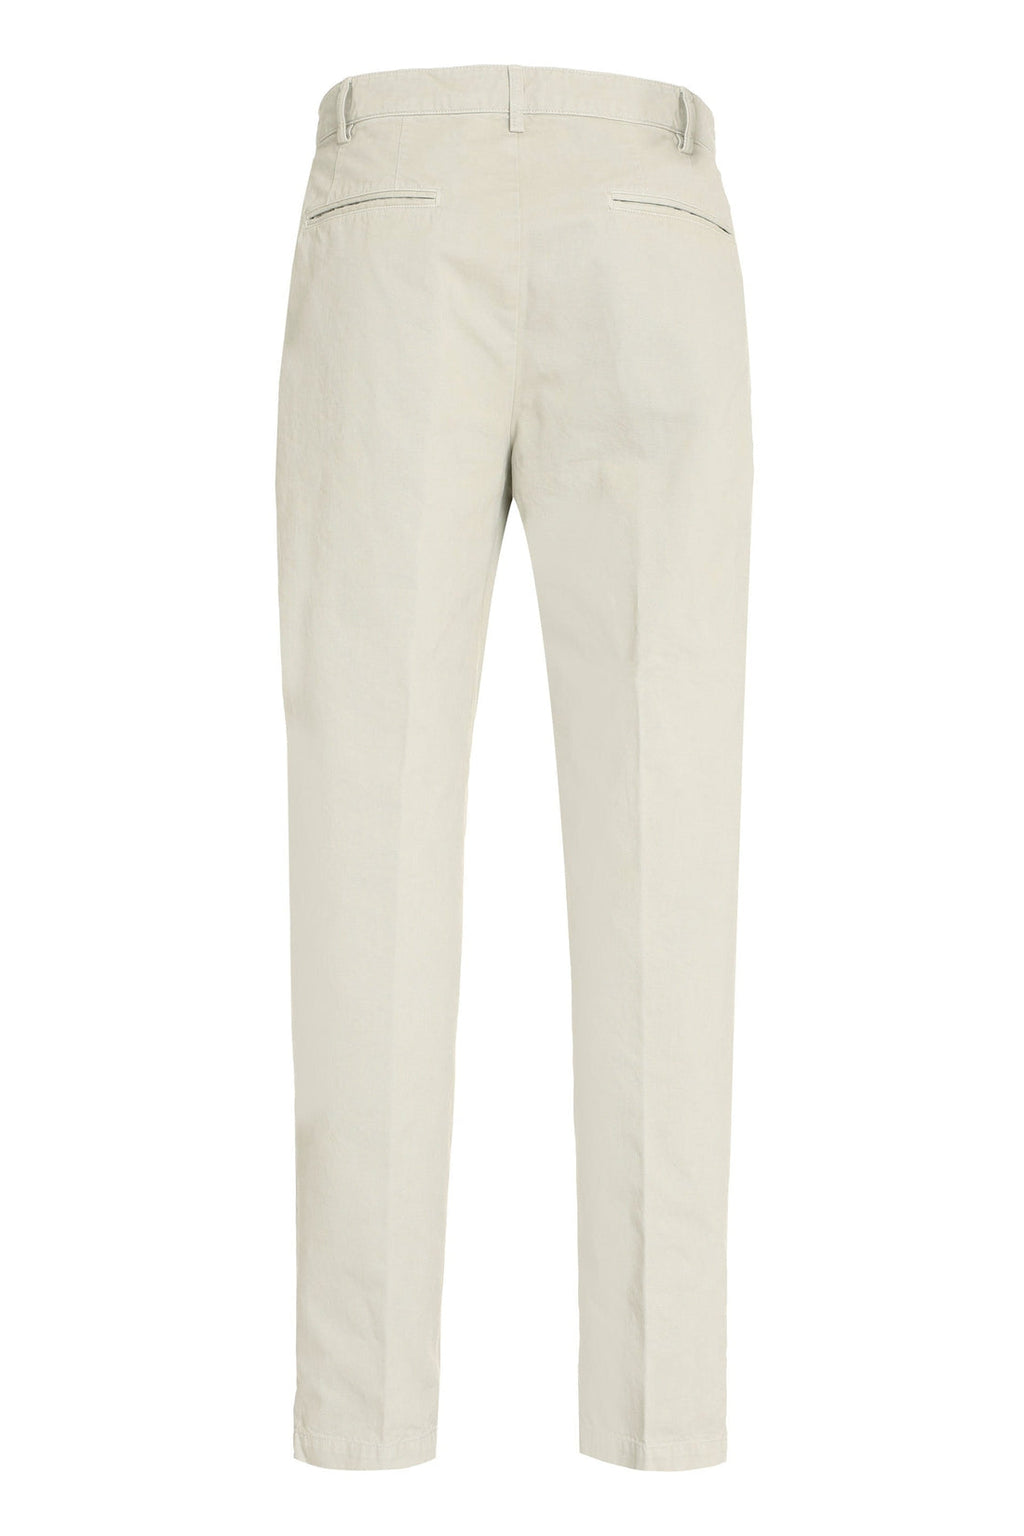 Aspesi-OUTLET-SALE-Roman cotton trousers-ARCHIVIST